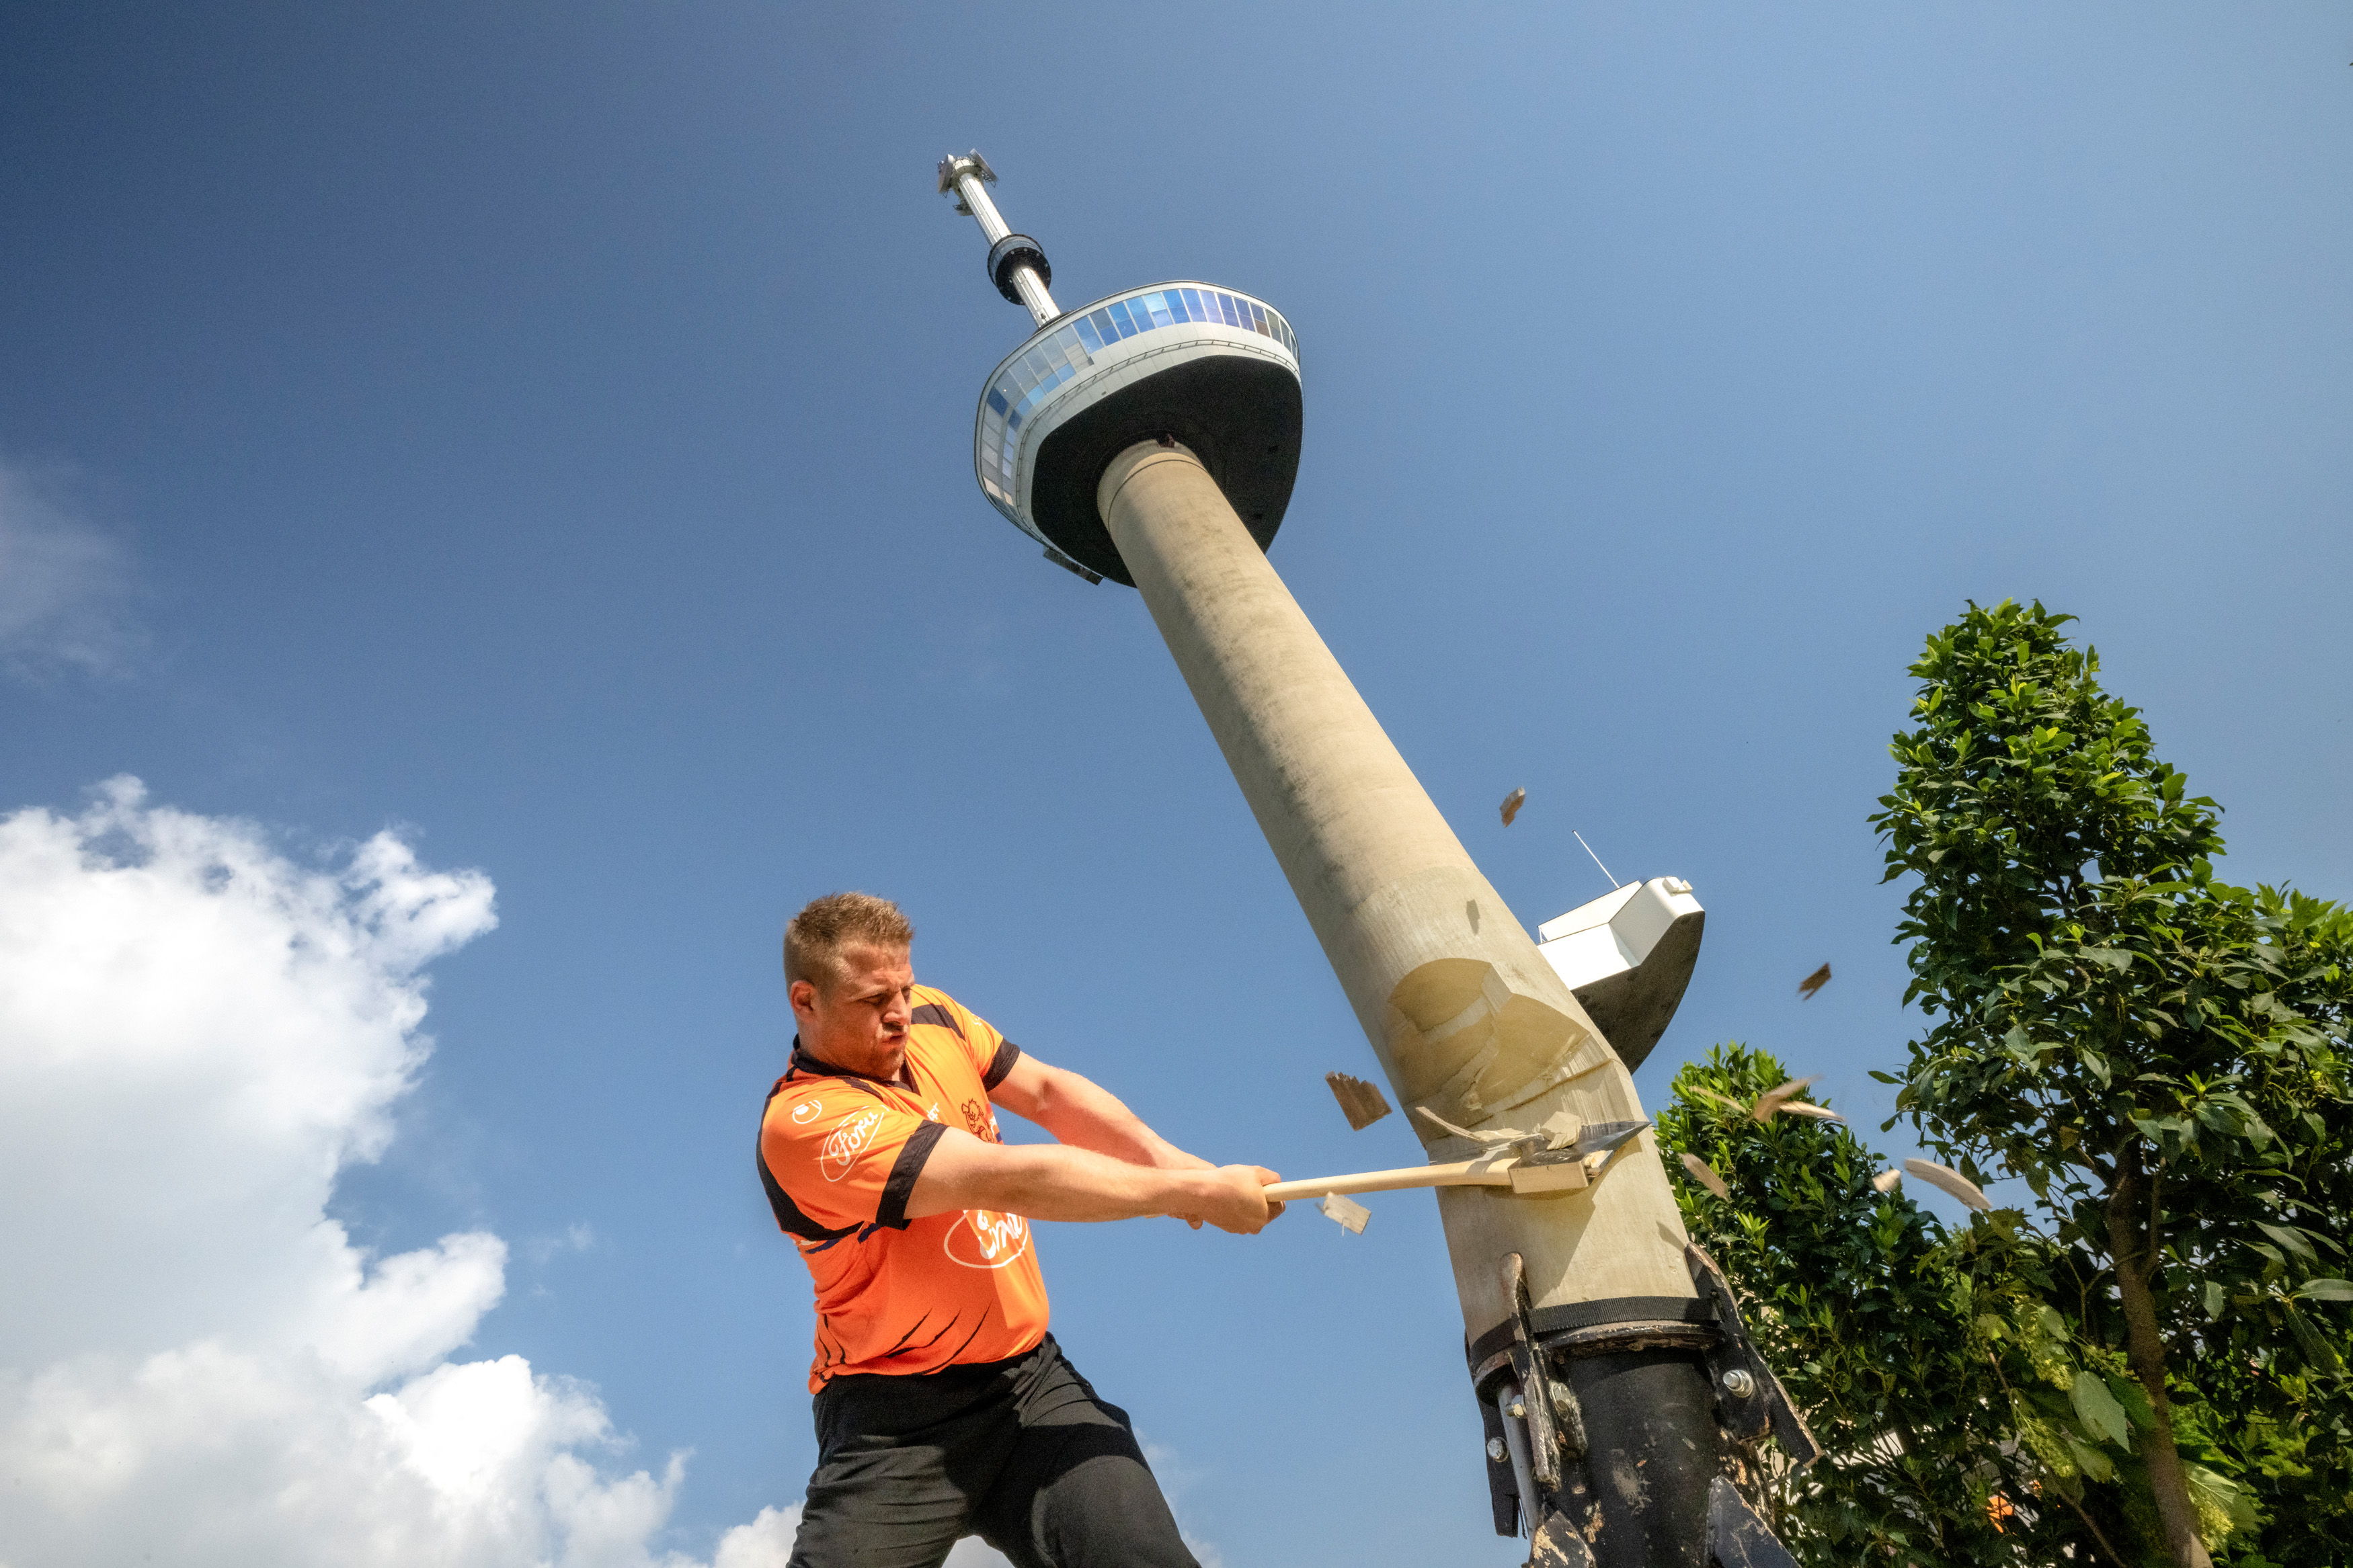 De hoop van het thuispubliek is gevestigd op de Nederlander Redmer Knol. Met de Euromast-toren als oefenterrein bereidt hij zich voor op de World Trophy.